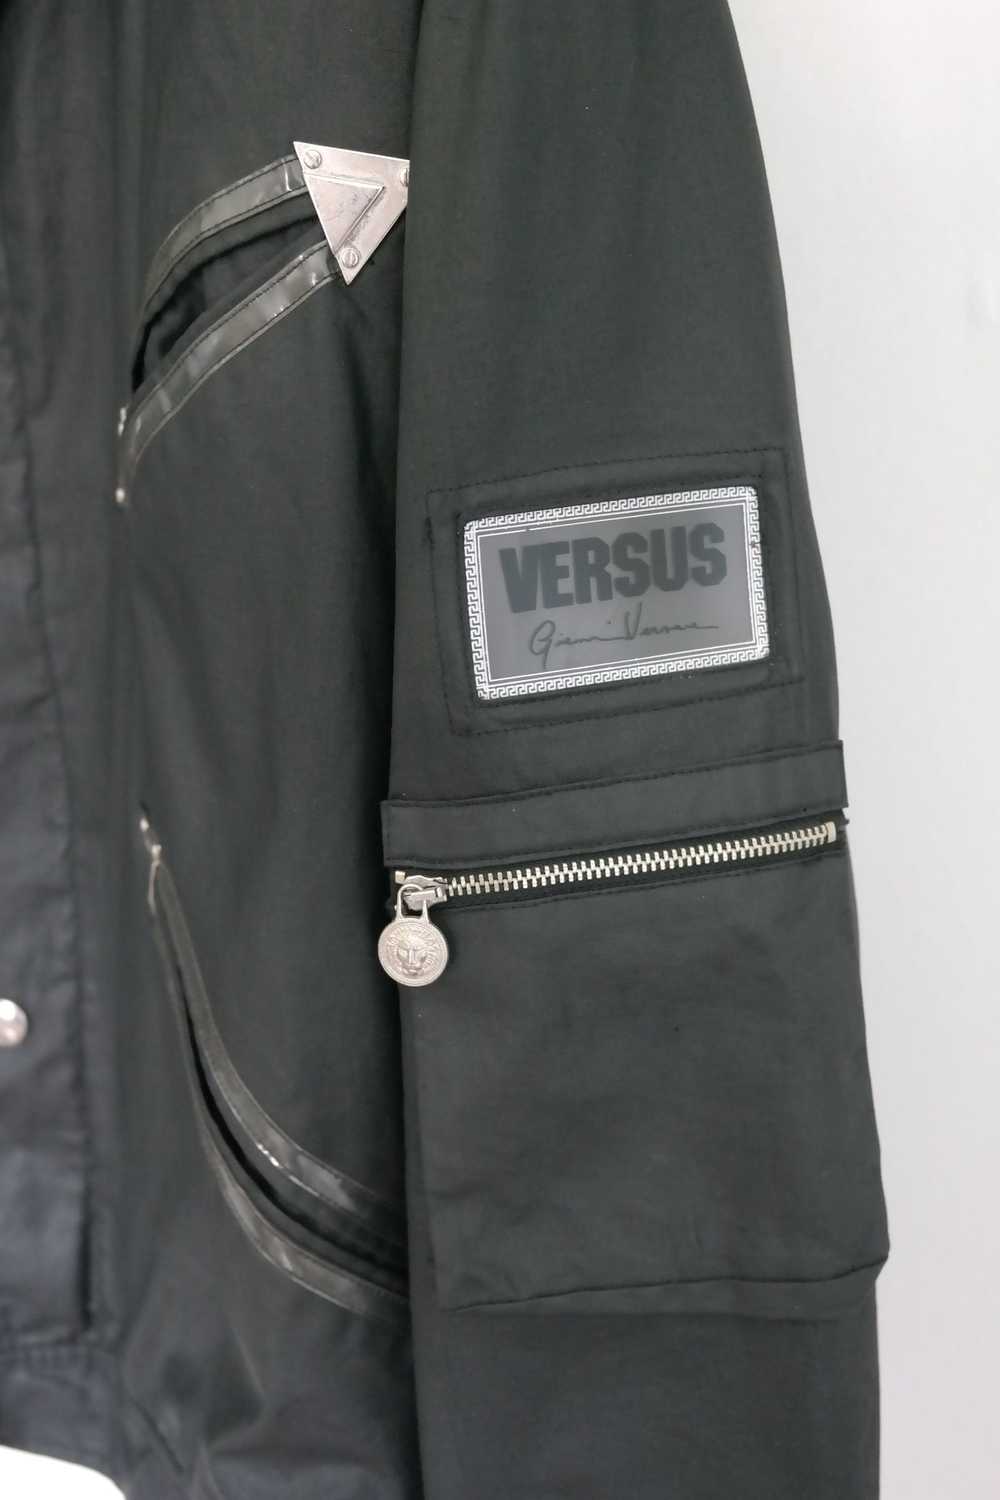 Versus Versace Versus Gianni Versace Jacket - image 4